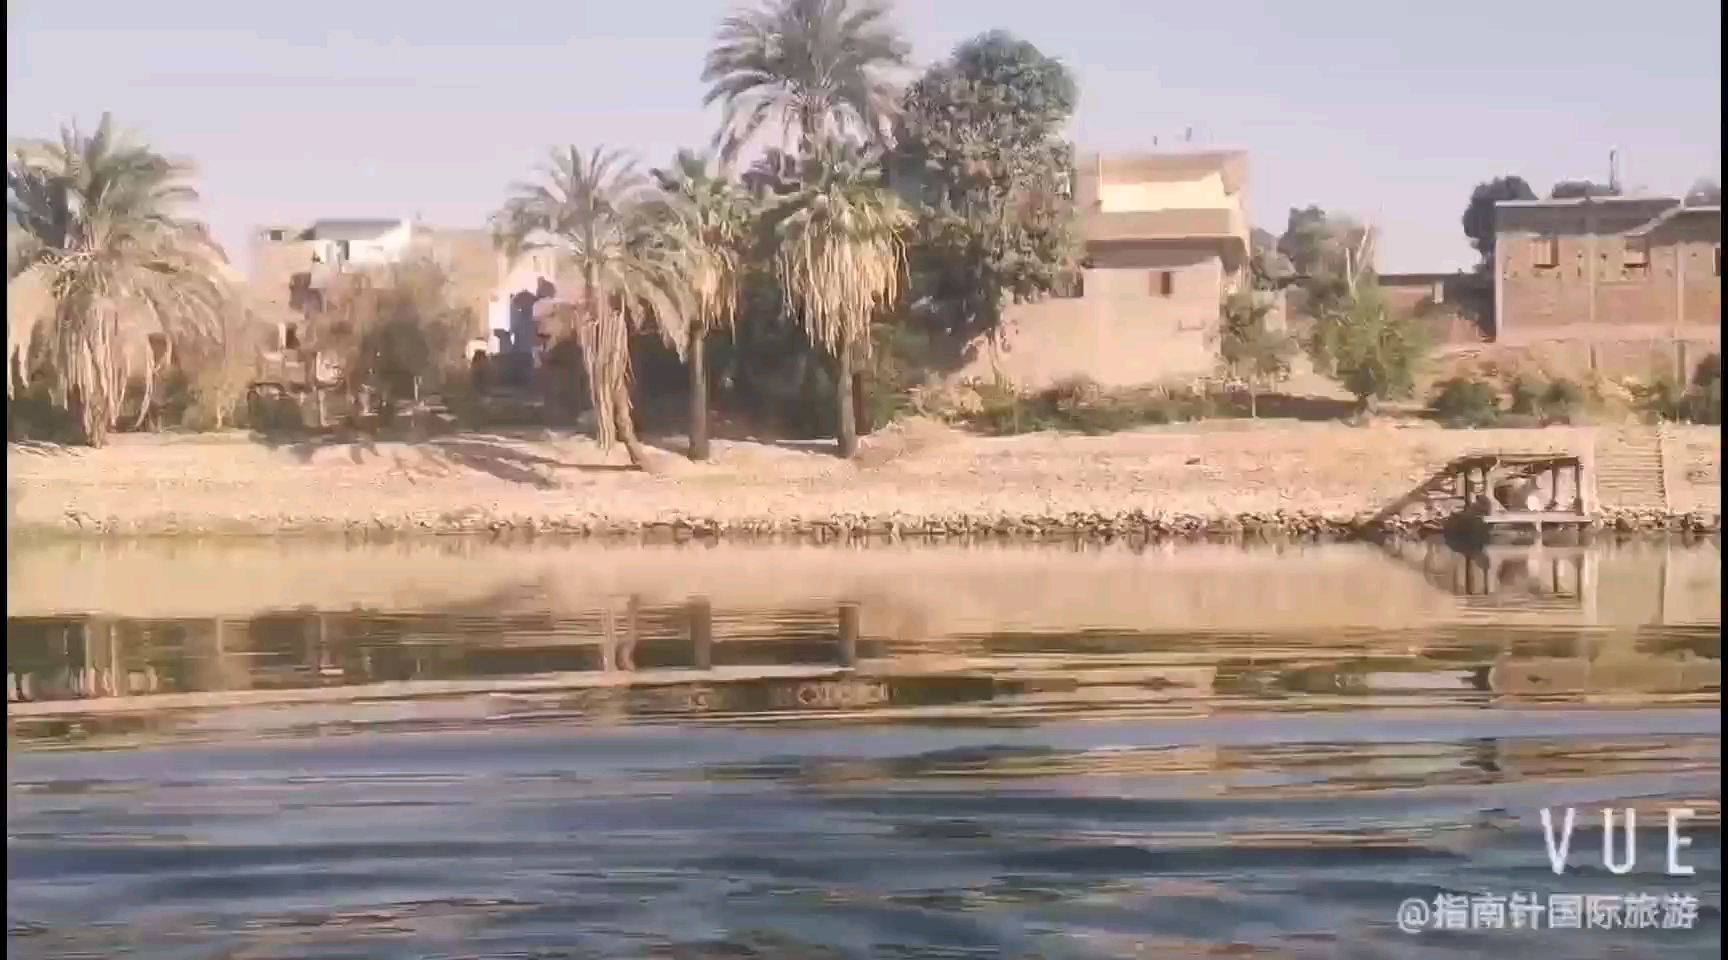 据说尼罗河上的游船旅行从19世纪就开始了，开始的时候是三角帆客轮，那个时候从开罗到阿布辛贝勒的旅行大